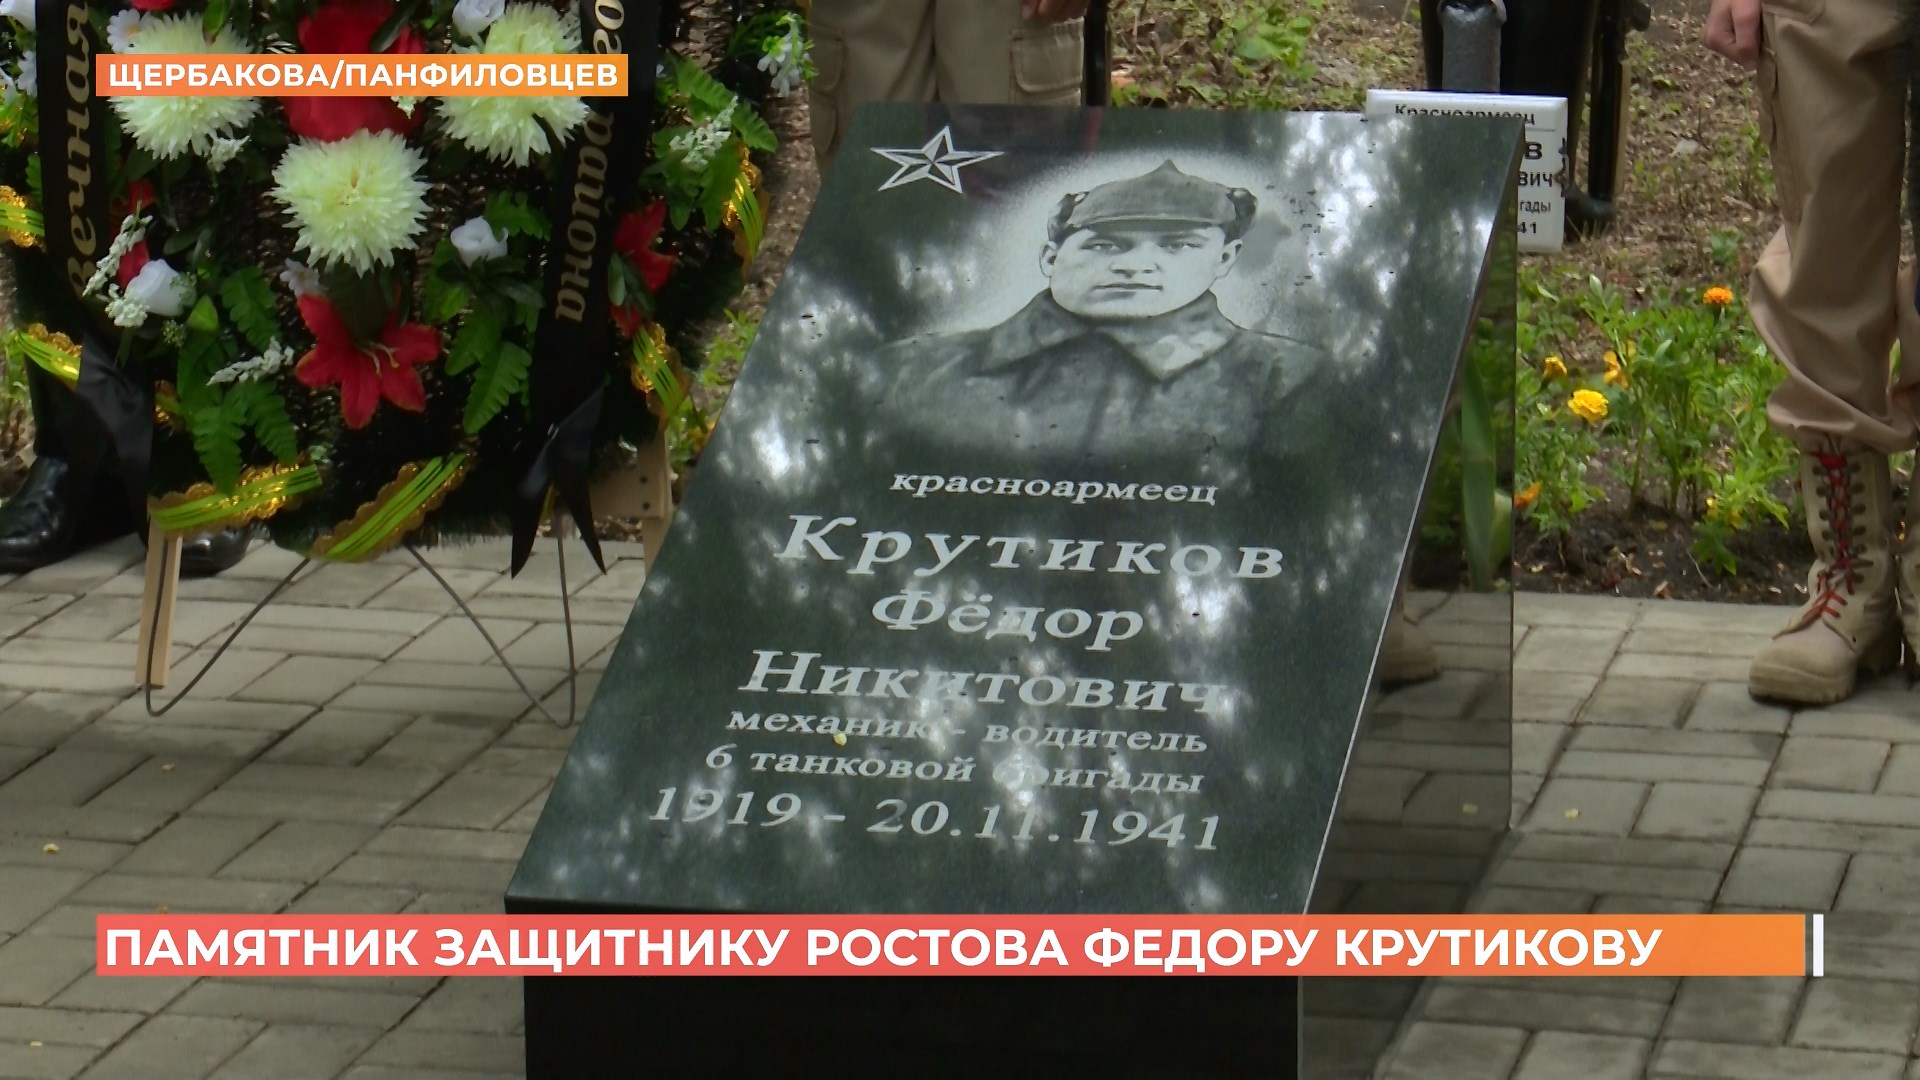 Памятник красноармейцу Федору Крутикову  открыли в Первомайском районе